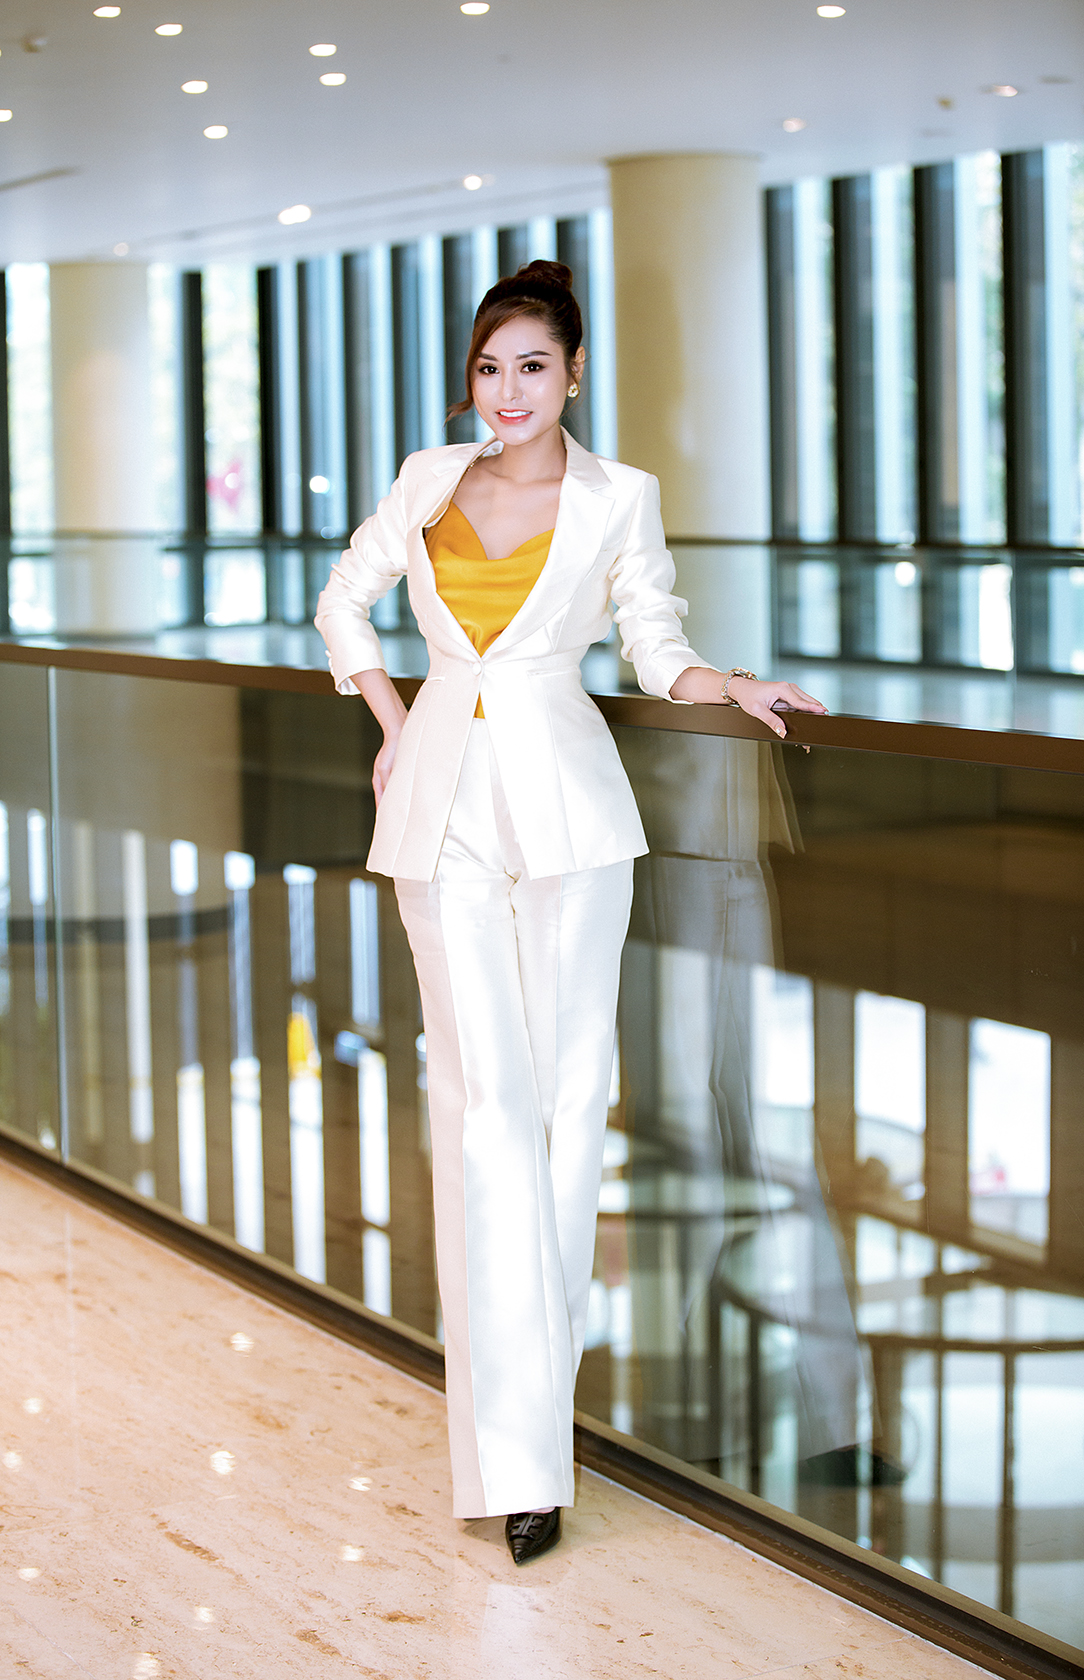 Hoa hậu Di Khả Hân đầu tư đồ hiệu tiền tỷ trong ngày lên chức giám đốc - ảnh 2